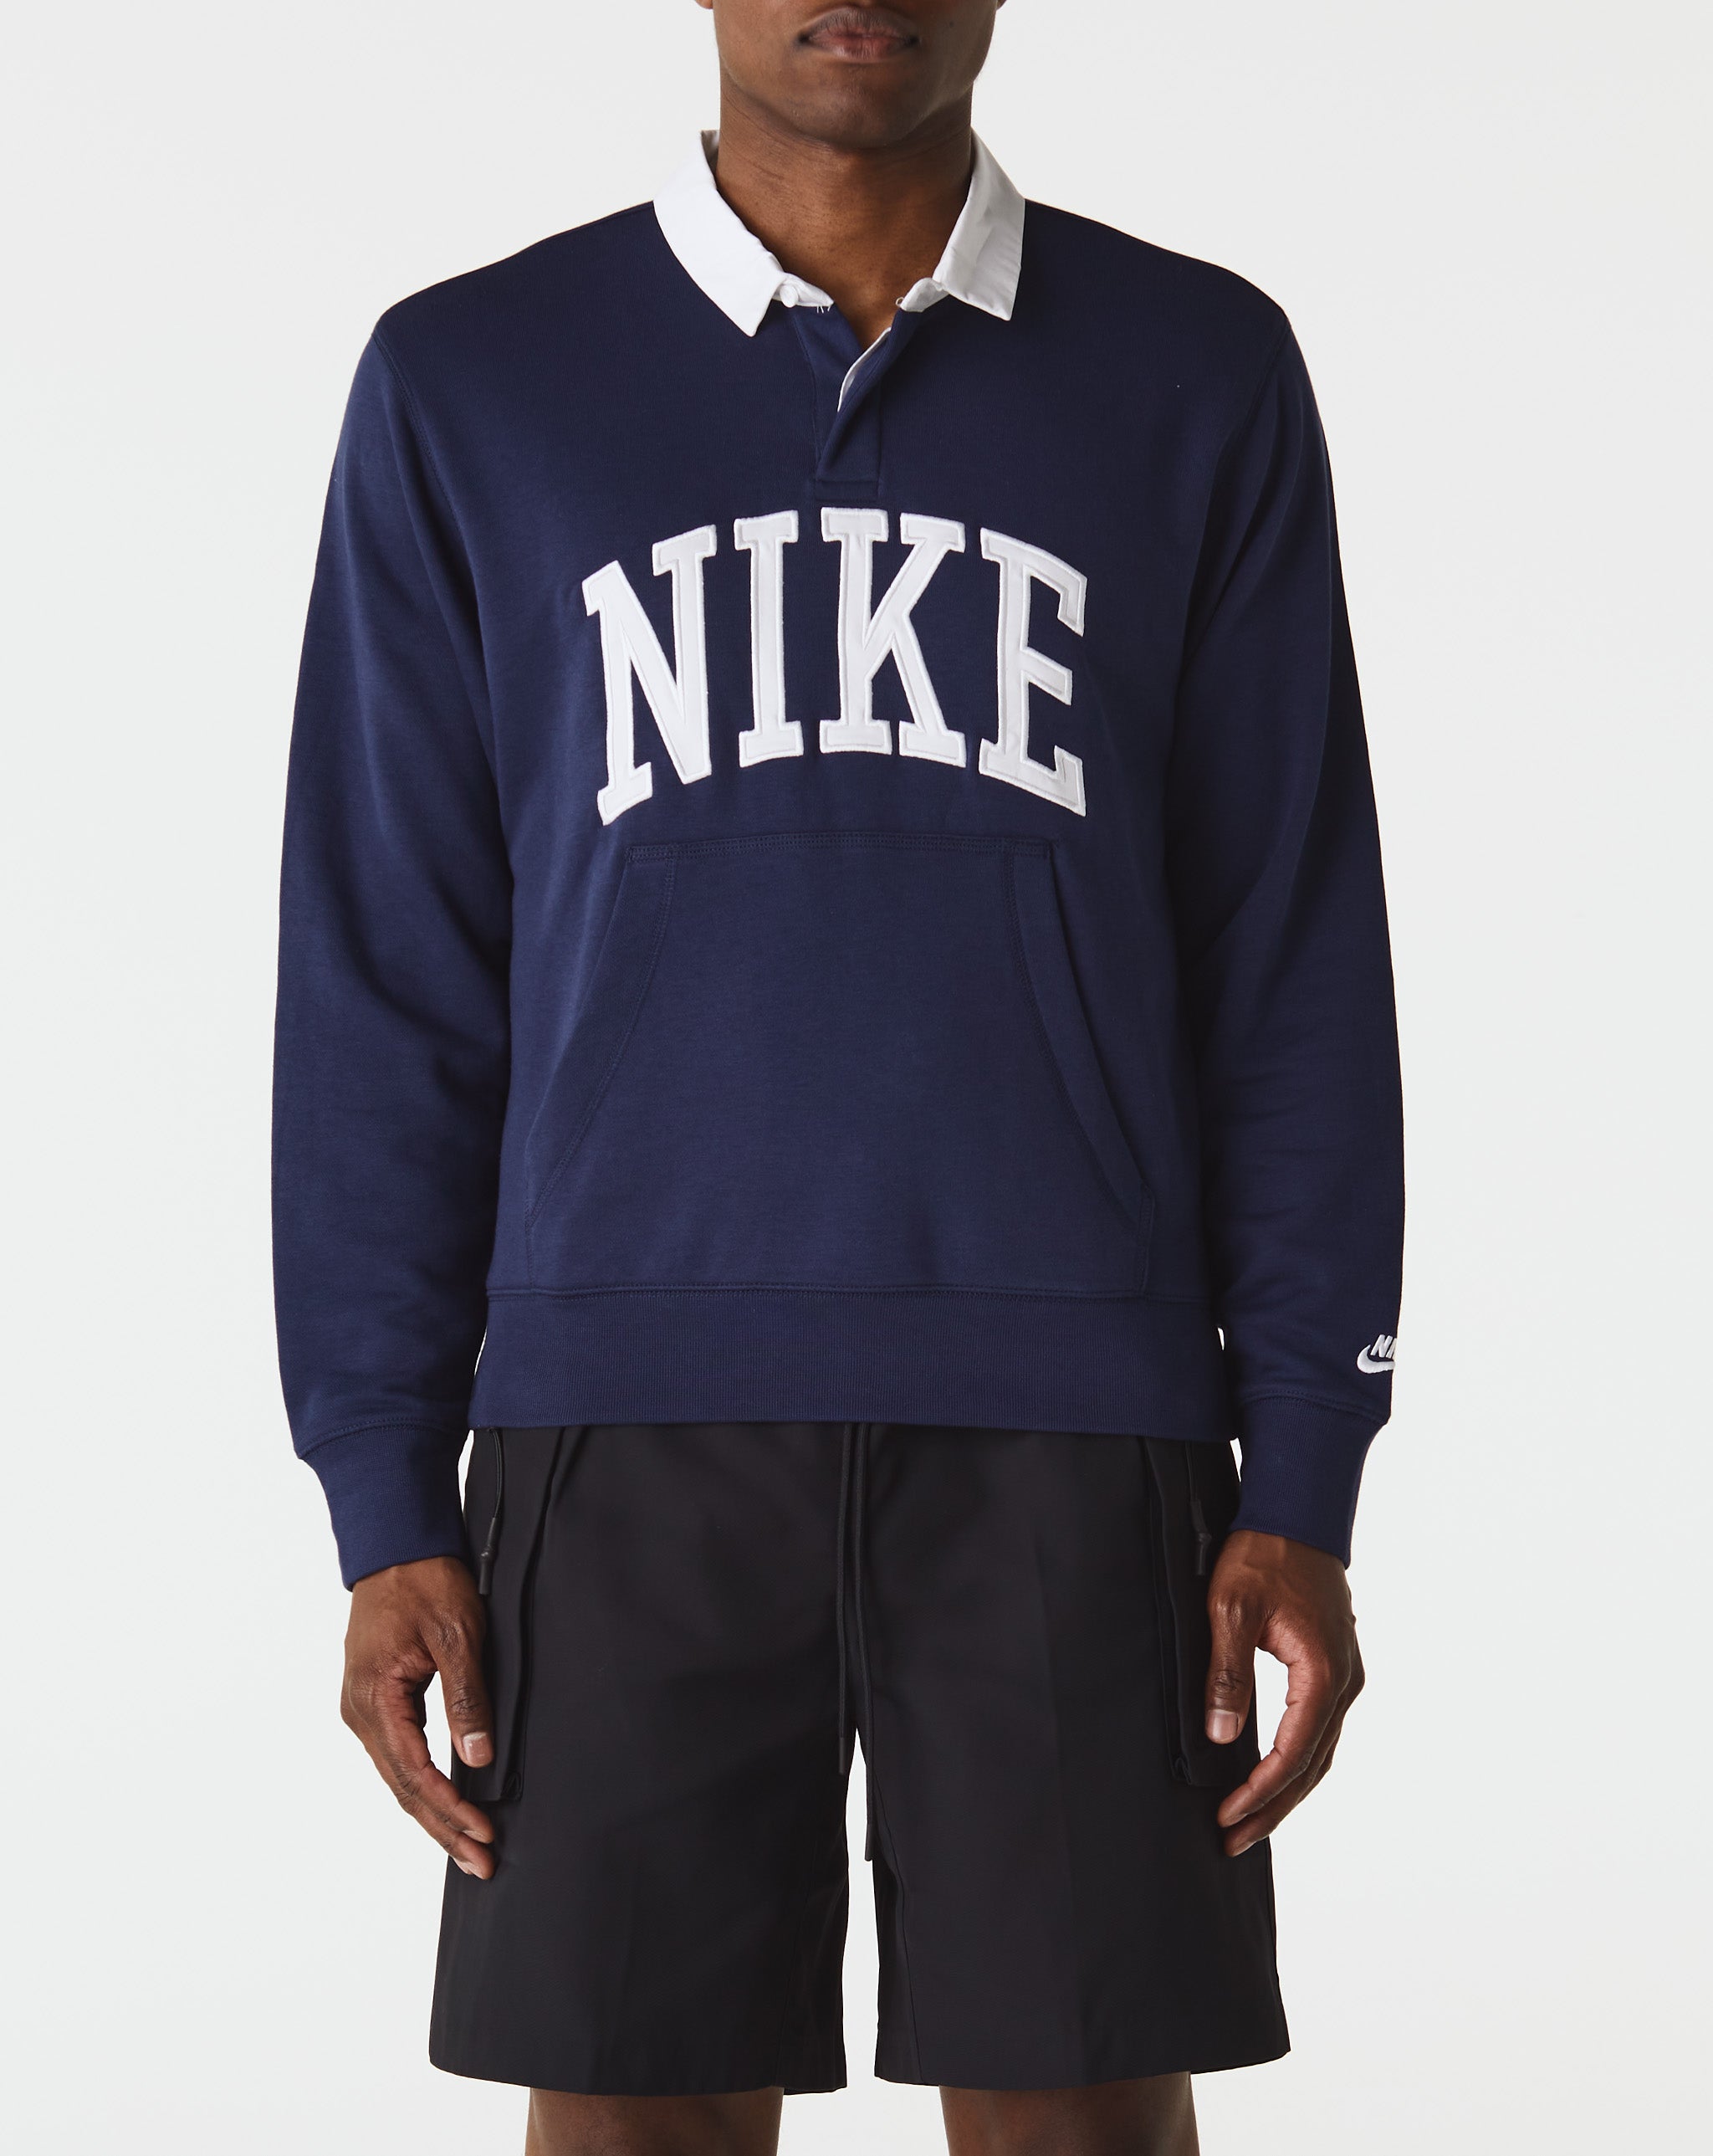 Nike Sweaters & Sweatshirts  - Cheap Urlfreeze Jordan outlet